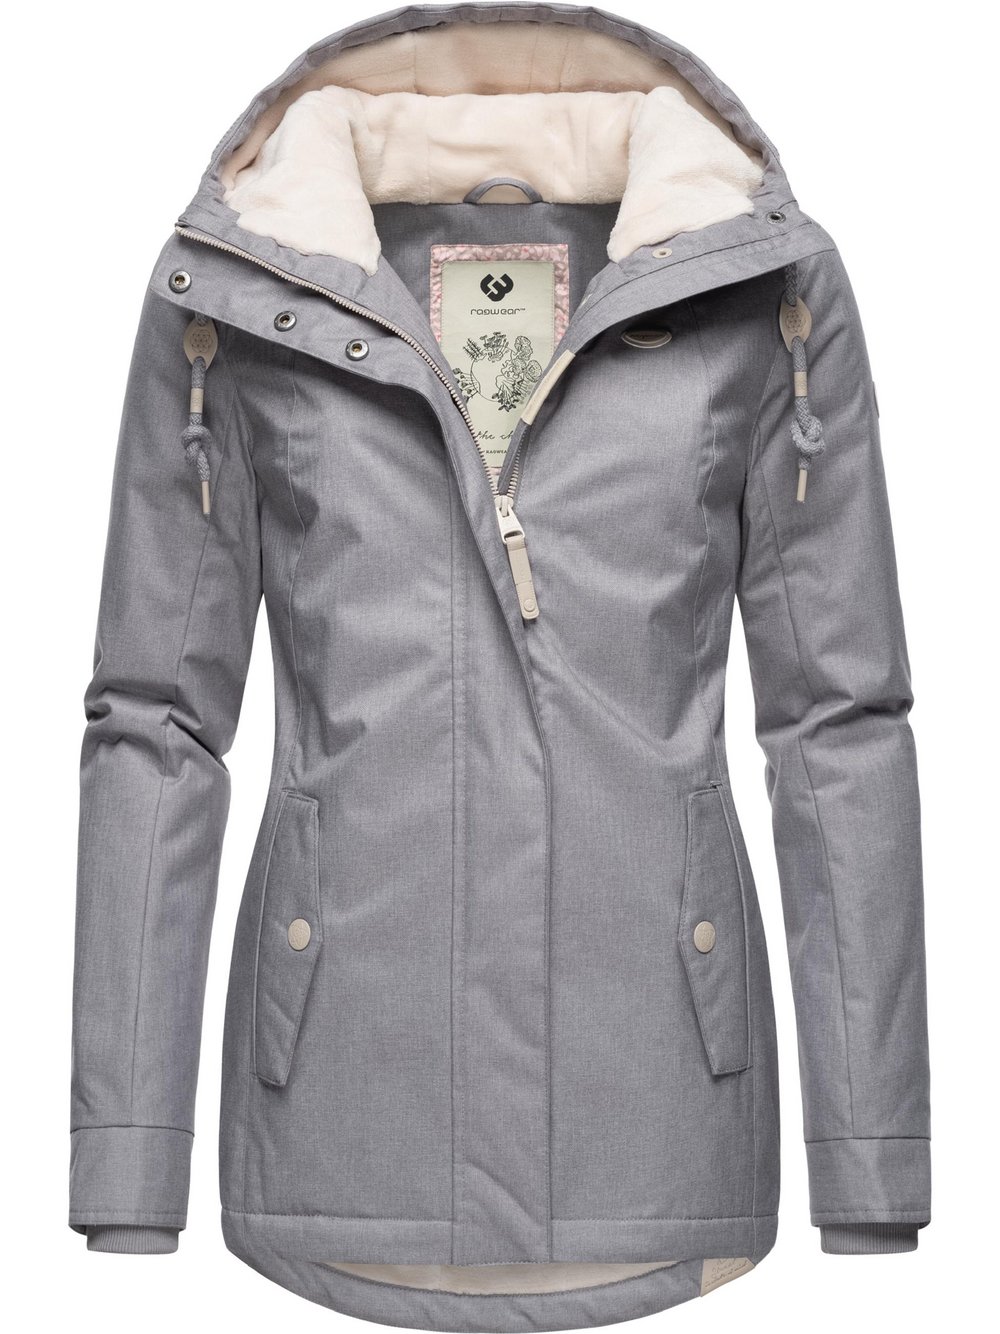 Preisvergleich für Ragwear Winterjacke Damen Ladendirekt L, GTIN: Größe L grau, Fleece, aus | 4064601715332 (40)